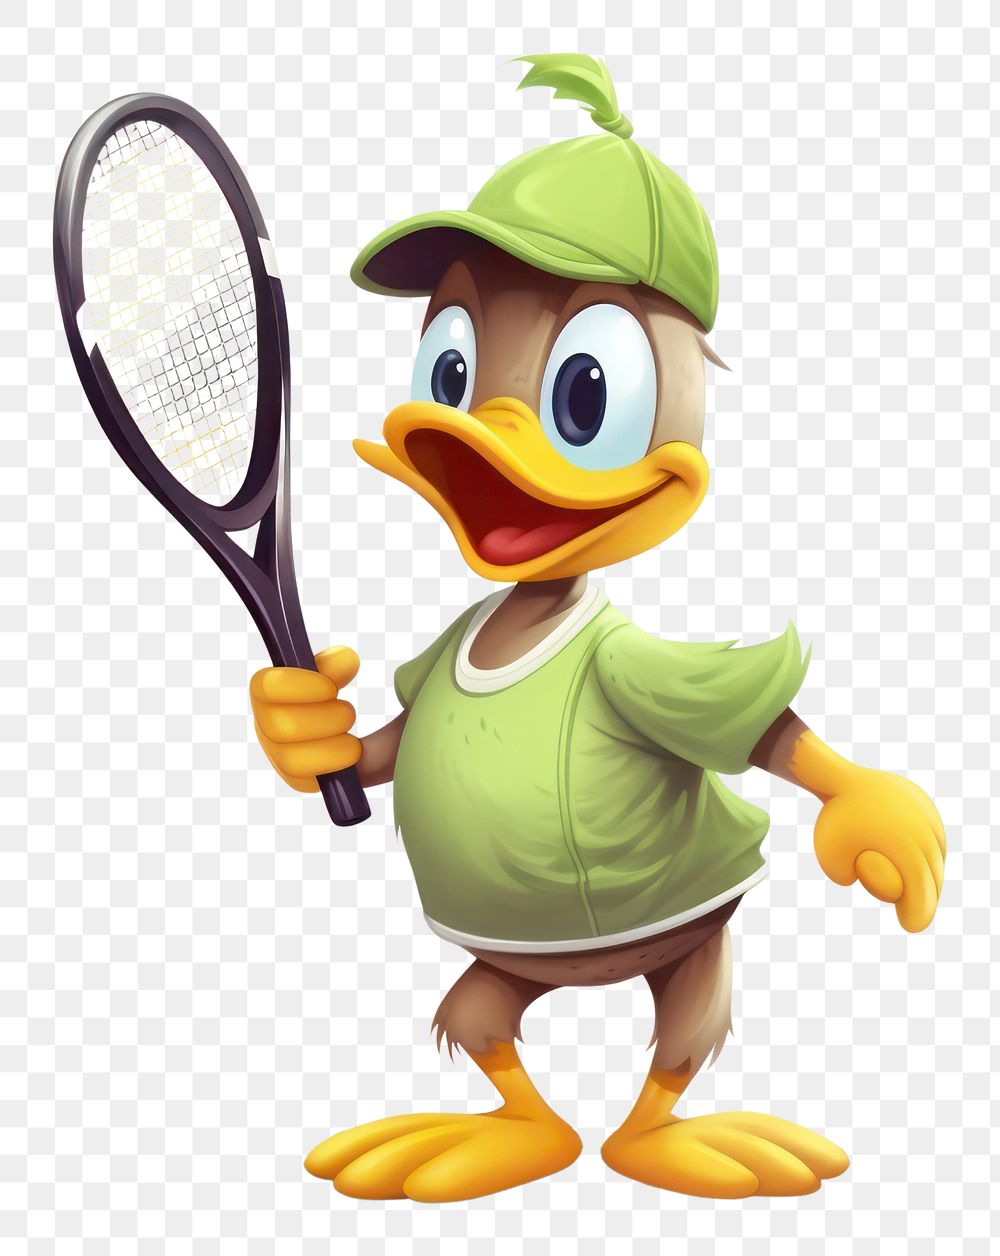 PNG Duck character tennis concept cartoon racket ball.